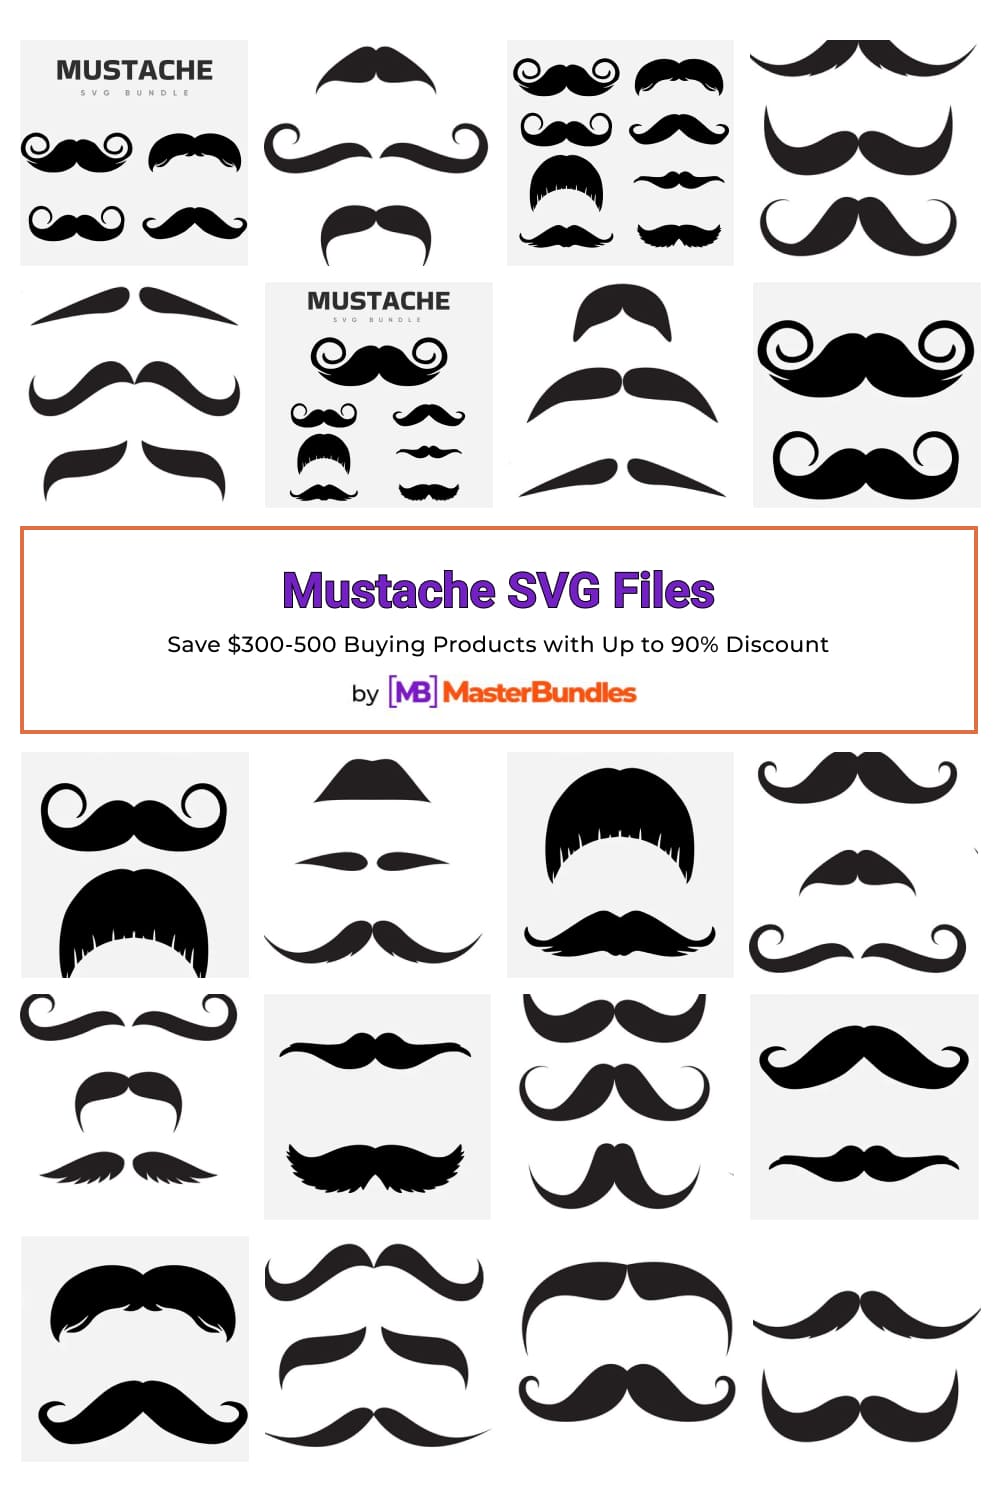 Mustache SVG Files for pinterest.